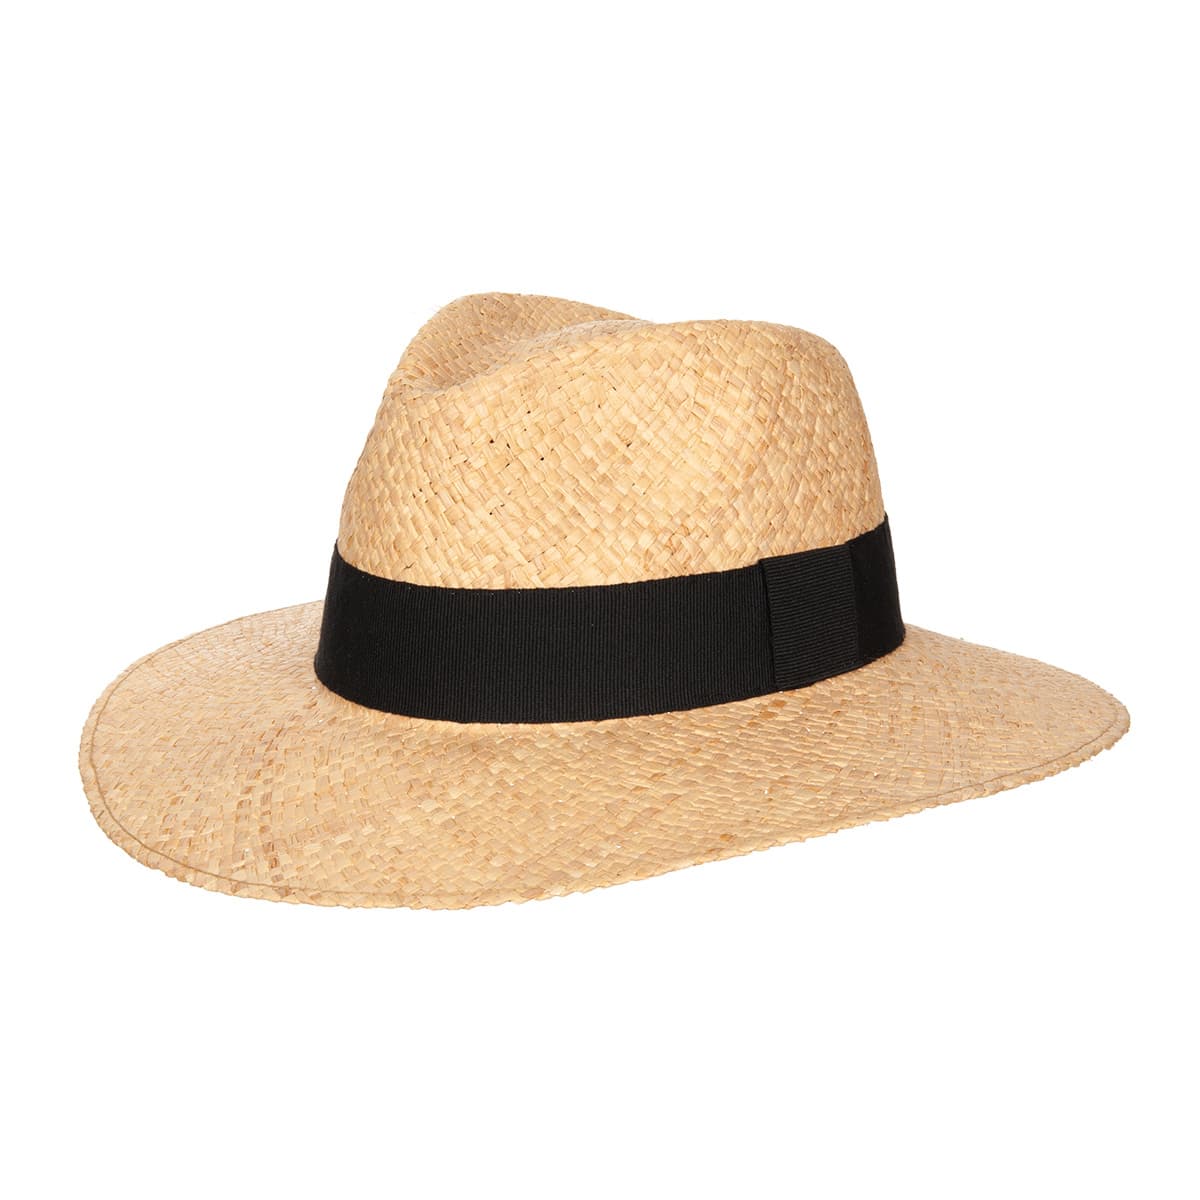 Sun Hat Ladies s Wide Brim Straw Women Summer Cap Party Dress